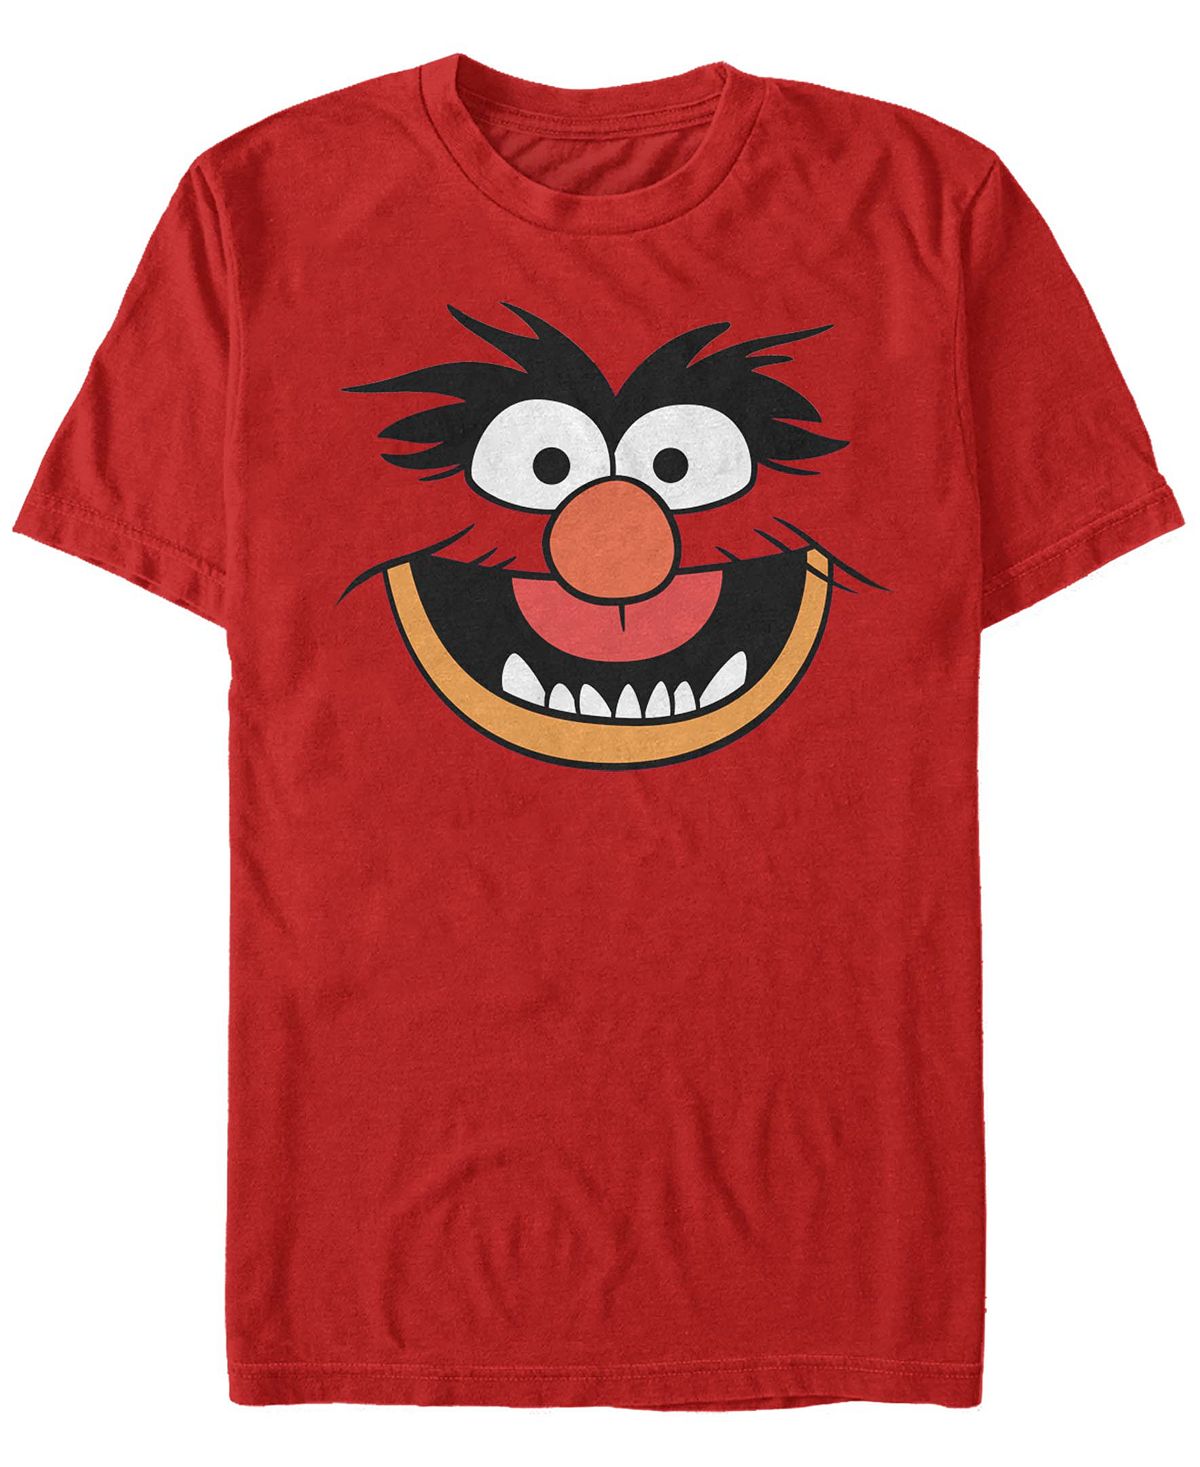 Мужской костюм животного, футболка с коротким рукавом, футболка Fifth Sun, красный